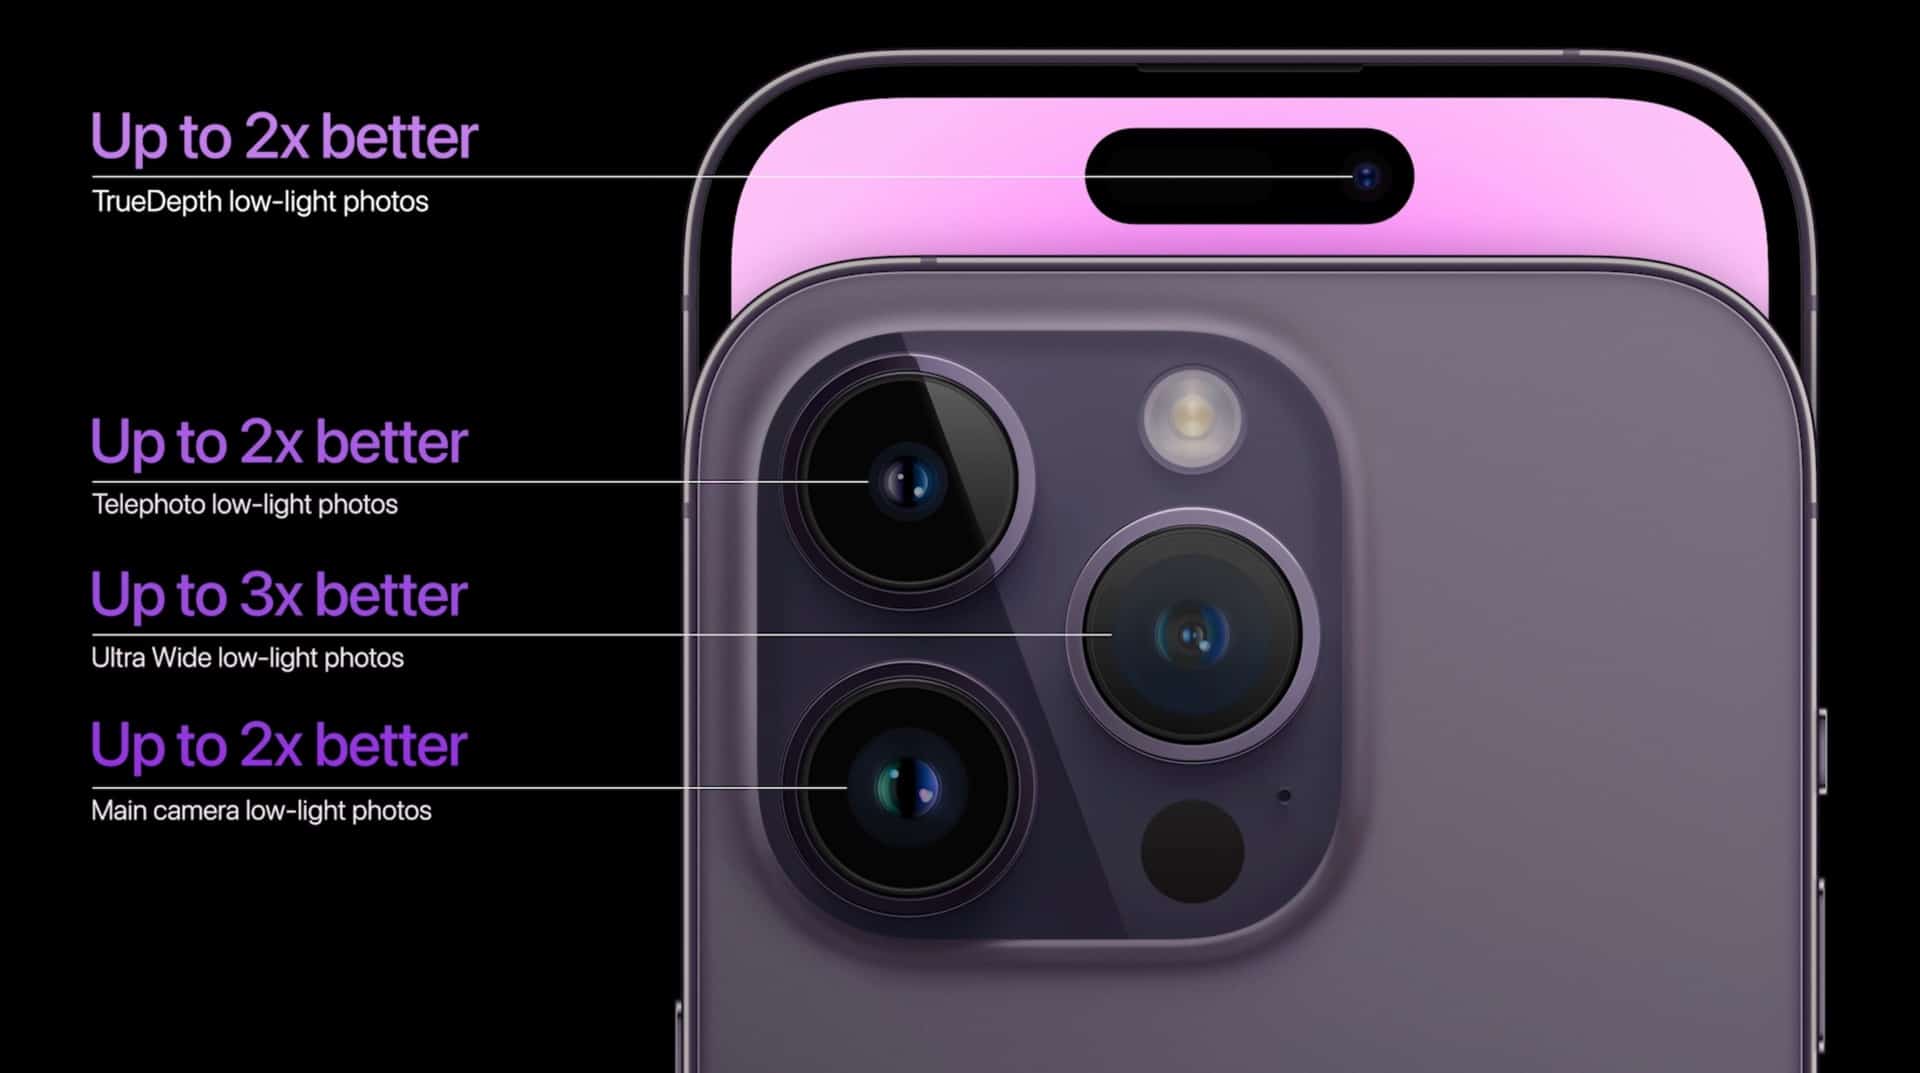 Tăng khẩu độ trên camera trước lên f/1.9 ở phiên bản iPhone 14 Pro Max giúp hình ảnh sáng hơn và có chất lượng tốt hơn khi selfie và video call